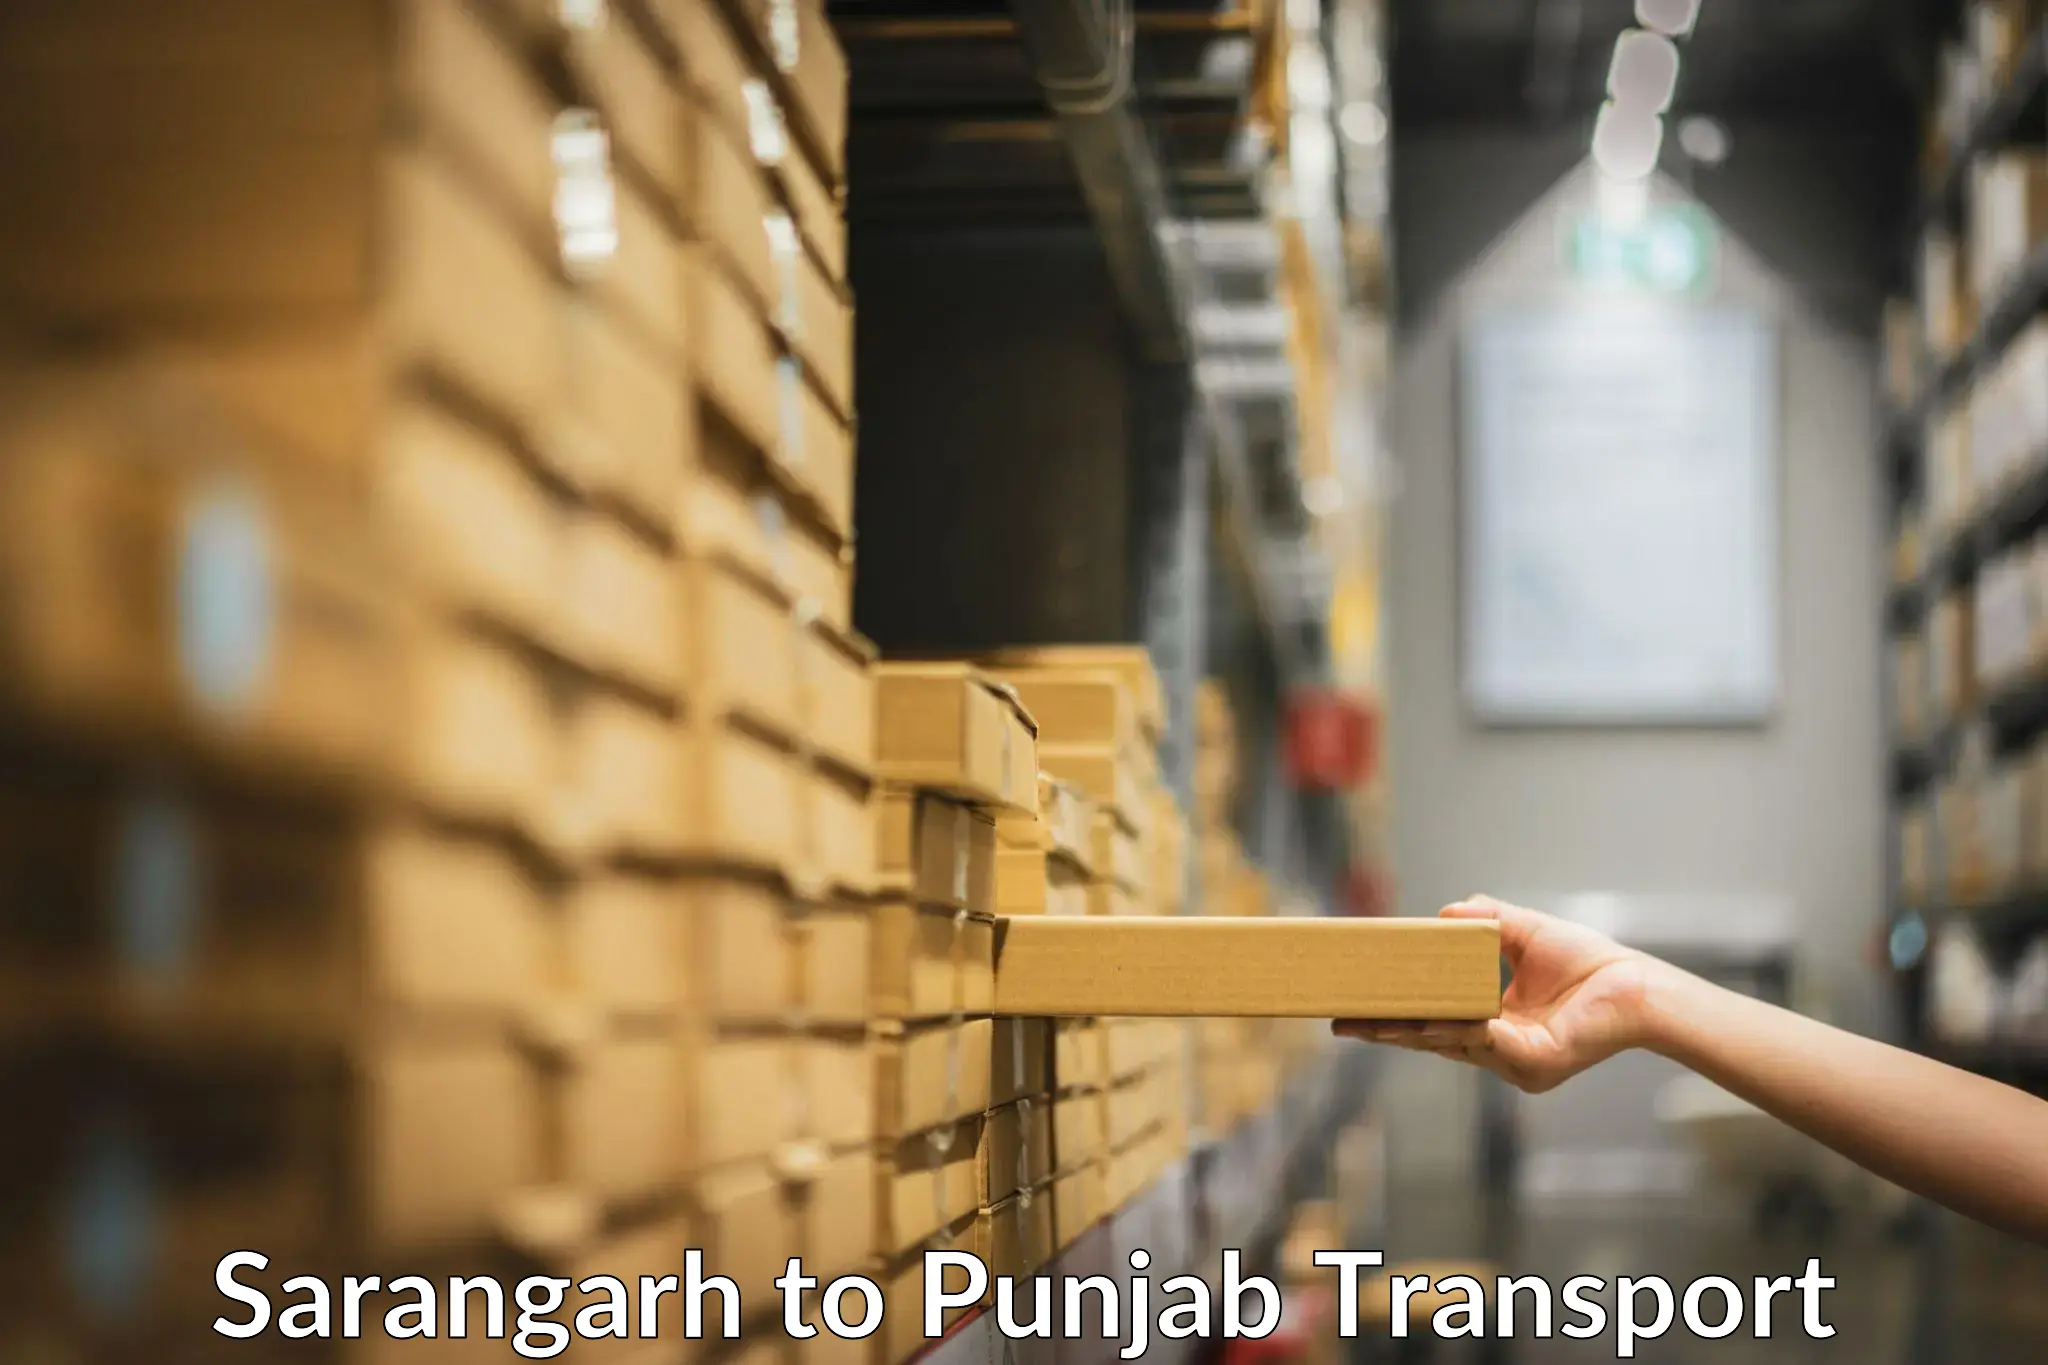 Logistics transportation services Sarangarh to Punjab